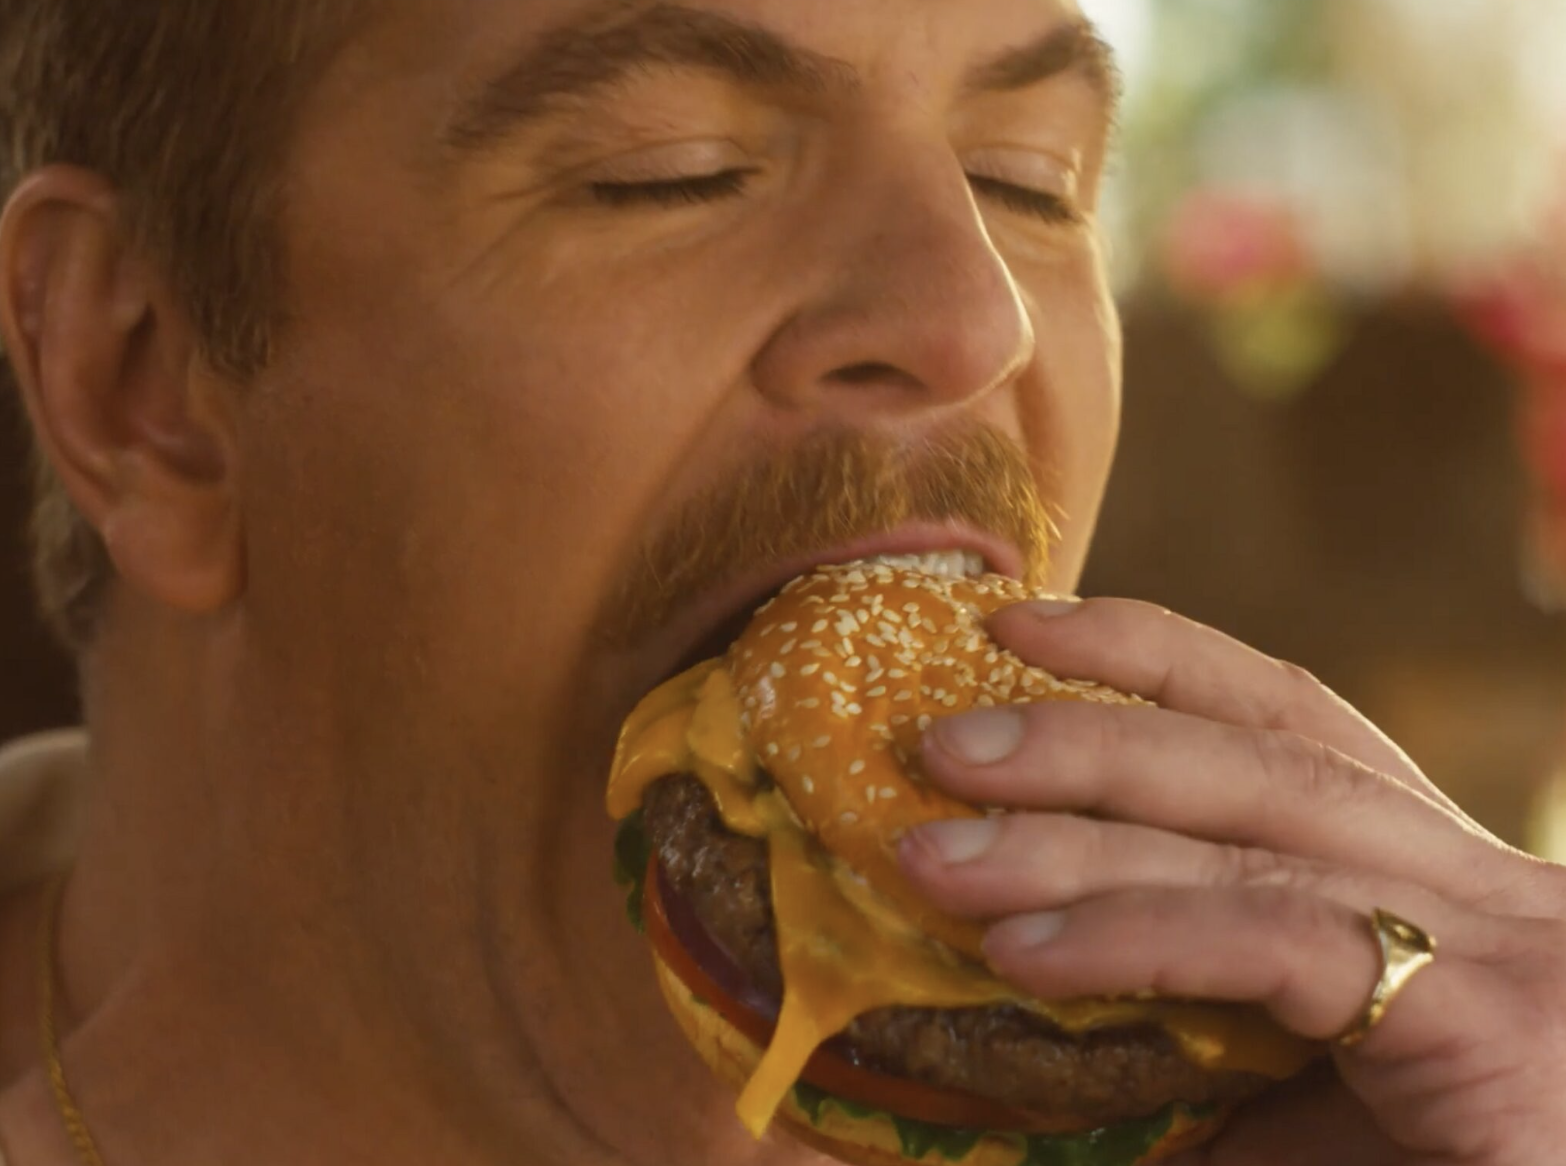 man eating cheeseburger